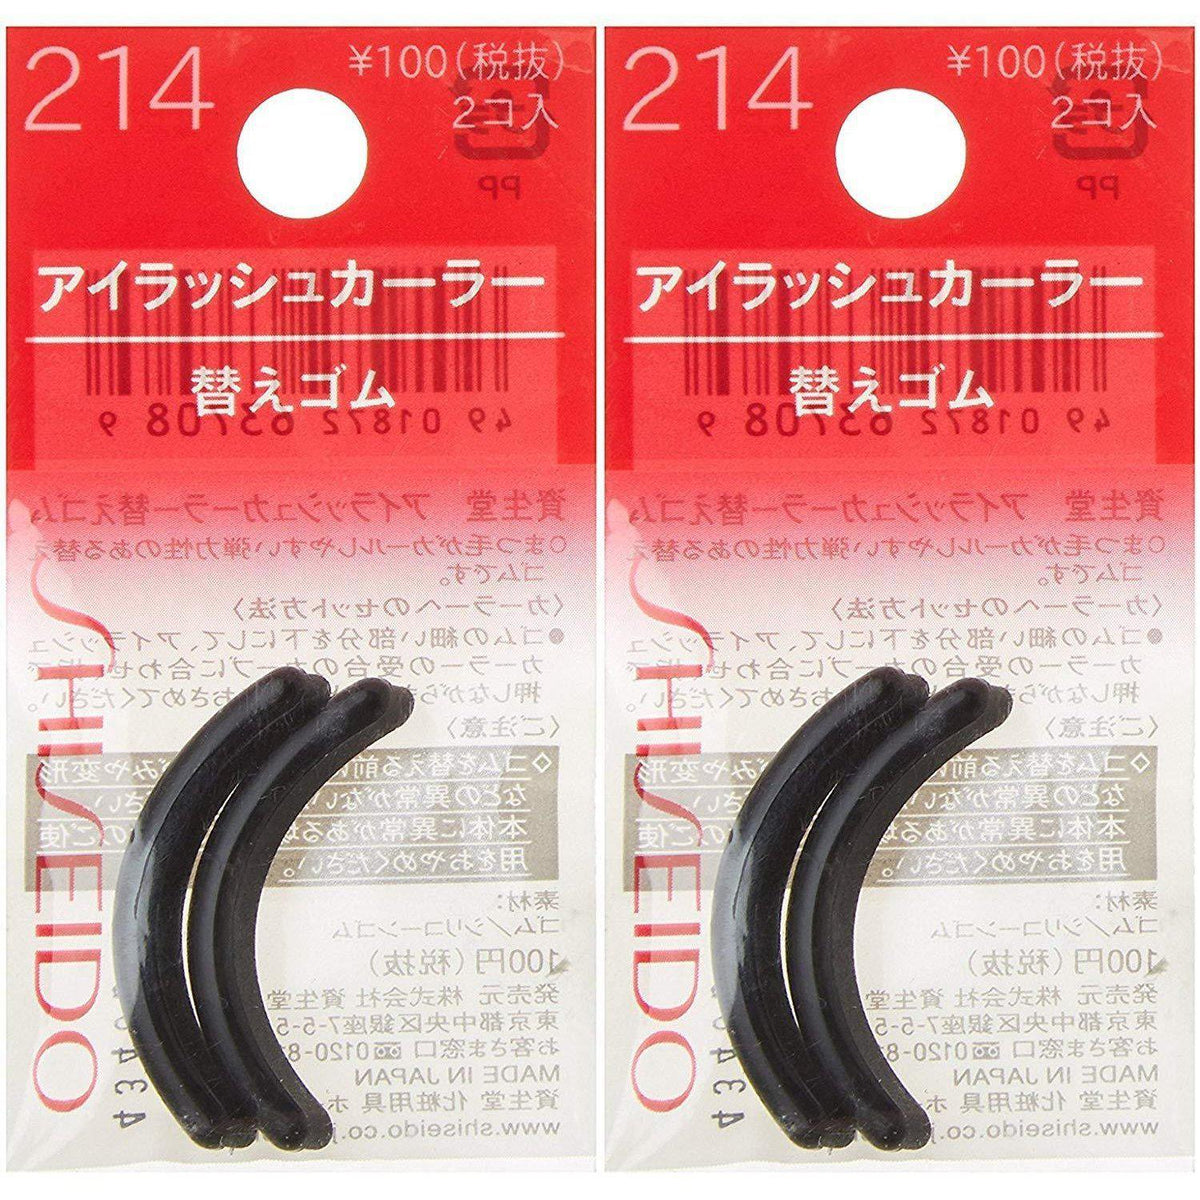 Shiseido Eyelash Curler Rubber Pad Refills 214 (Pack of 2) – Japanese Taste